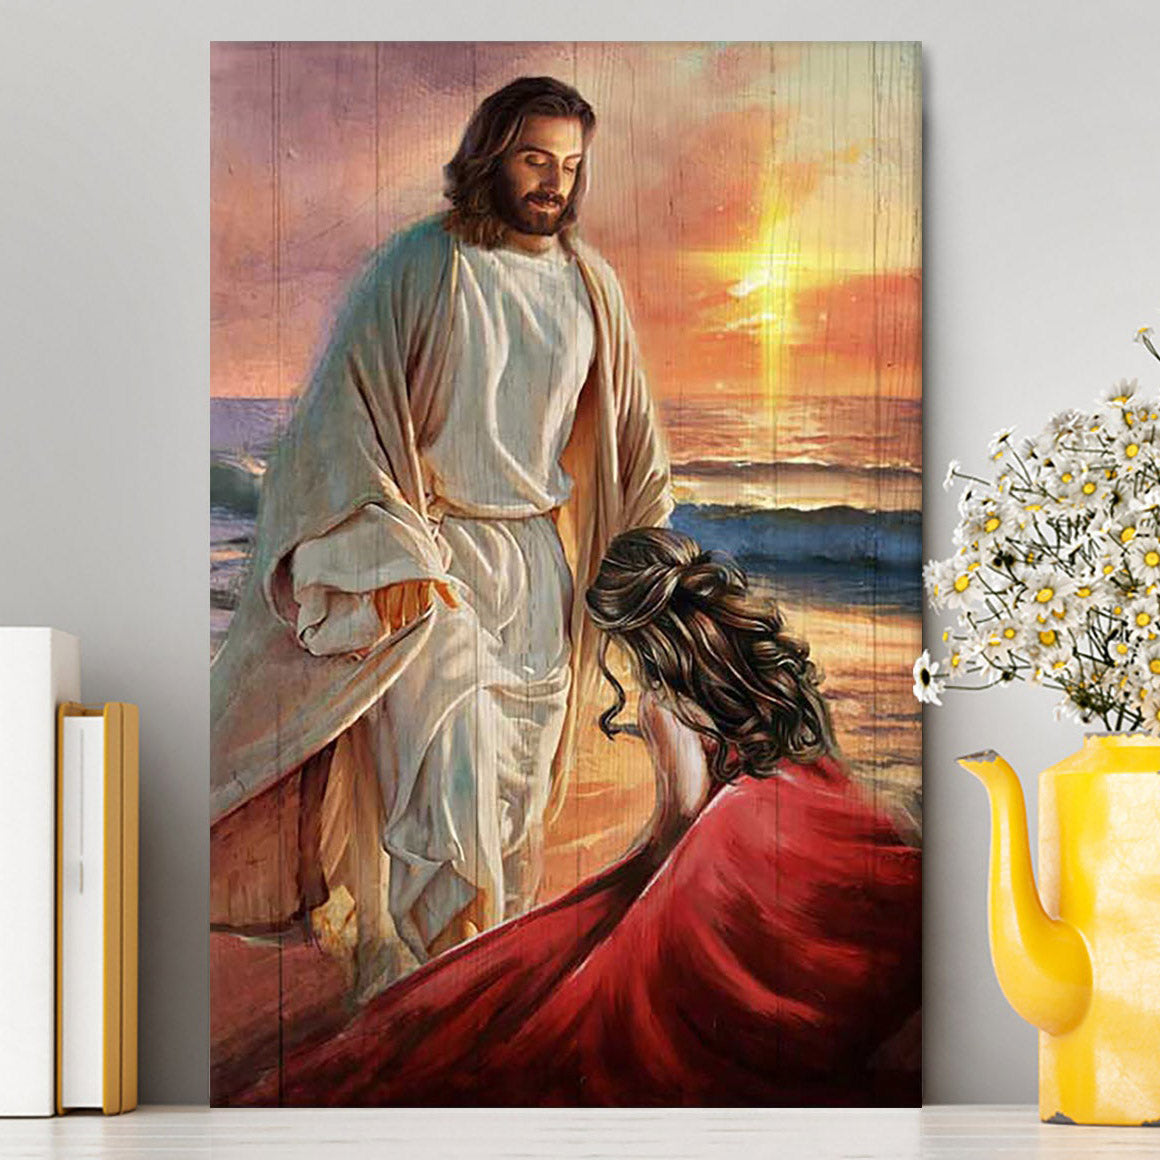 Beautiful Sunset Kneeling Before God Canvas Art - Bible Verse Wall Art - Christian Inspirational Wall Decor